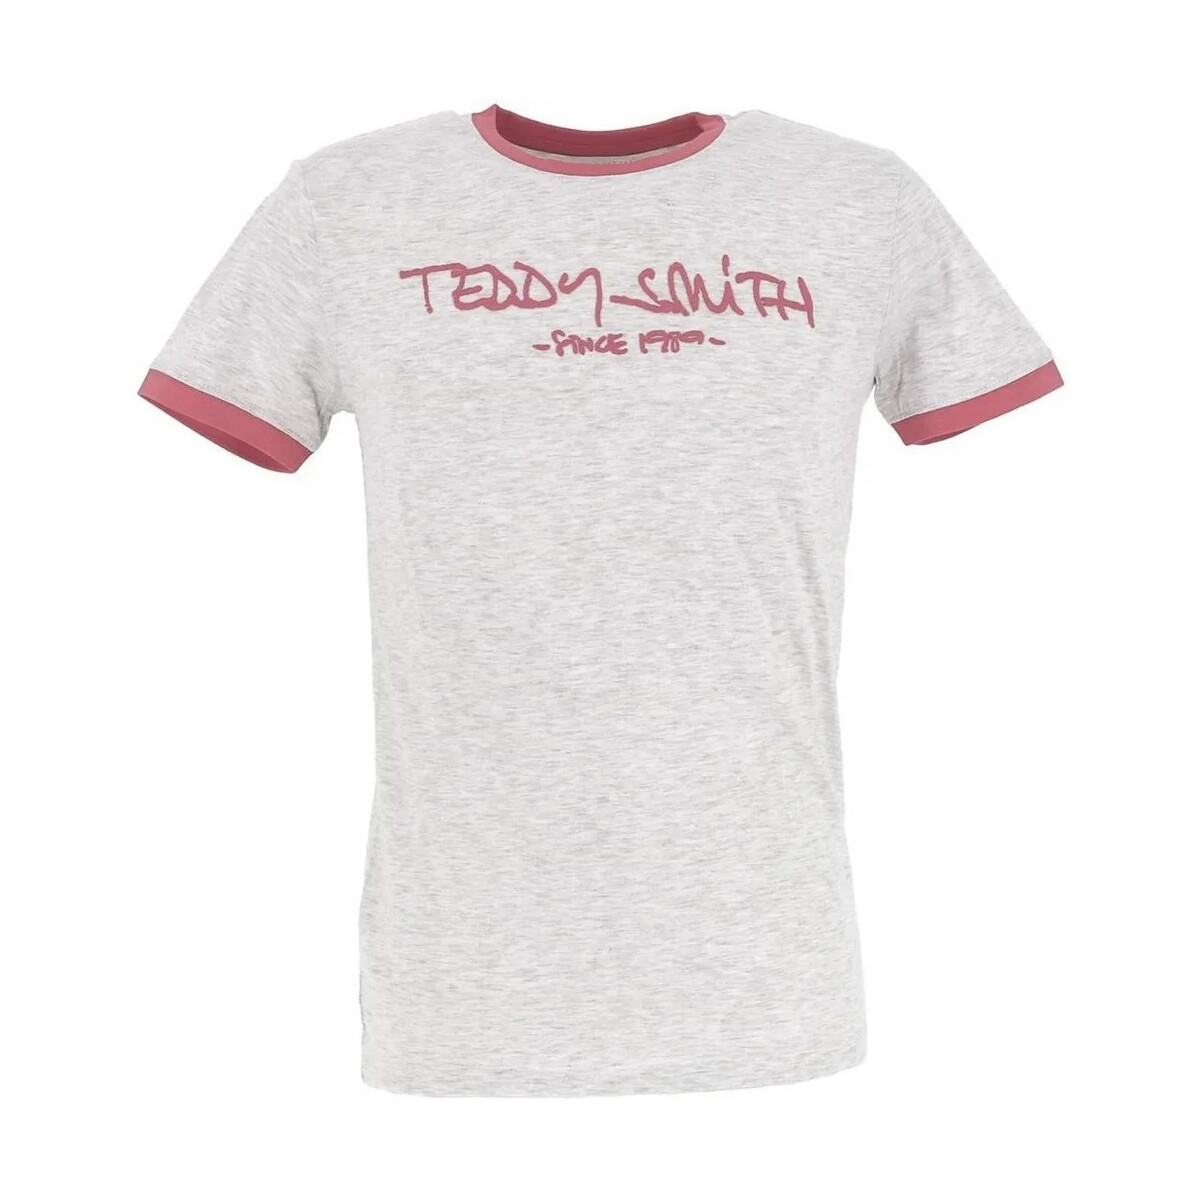 textil Hombre Tops y Camisetas Teddy Smith  Gris